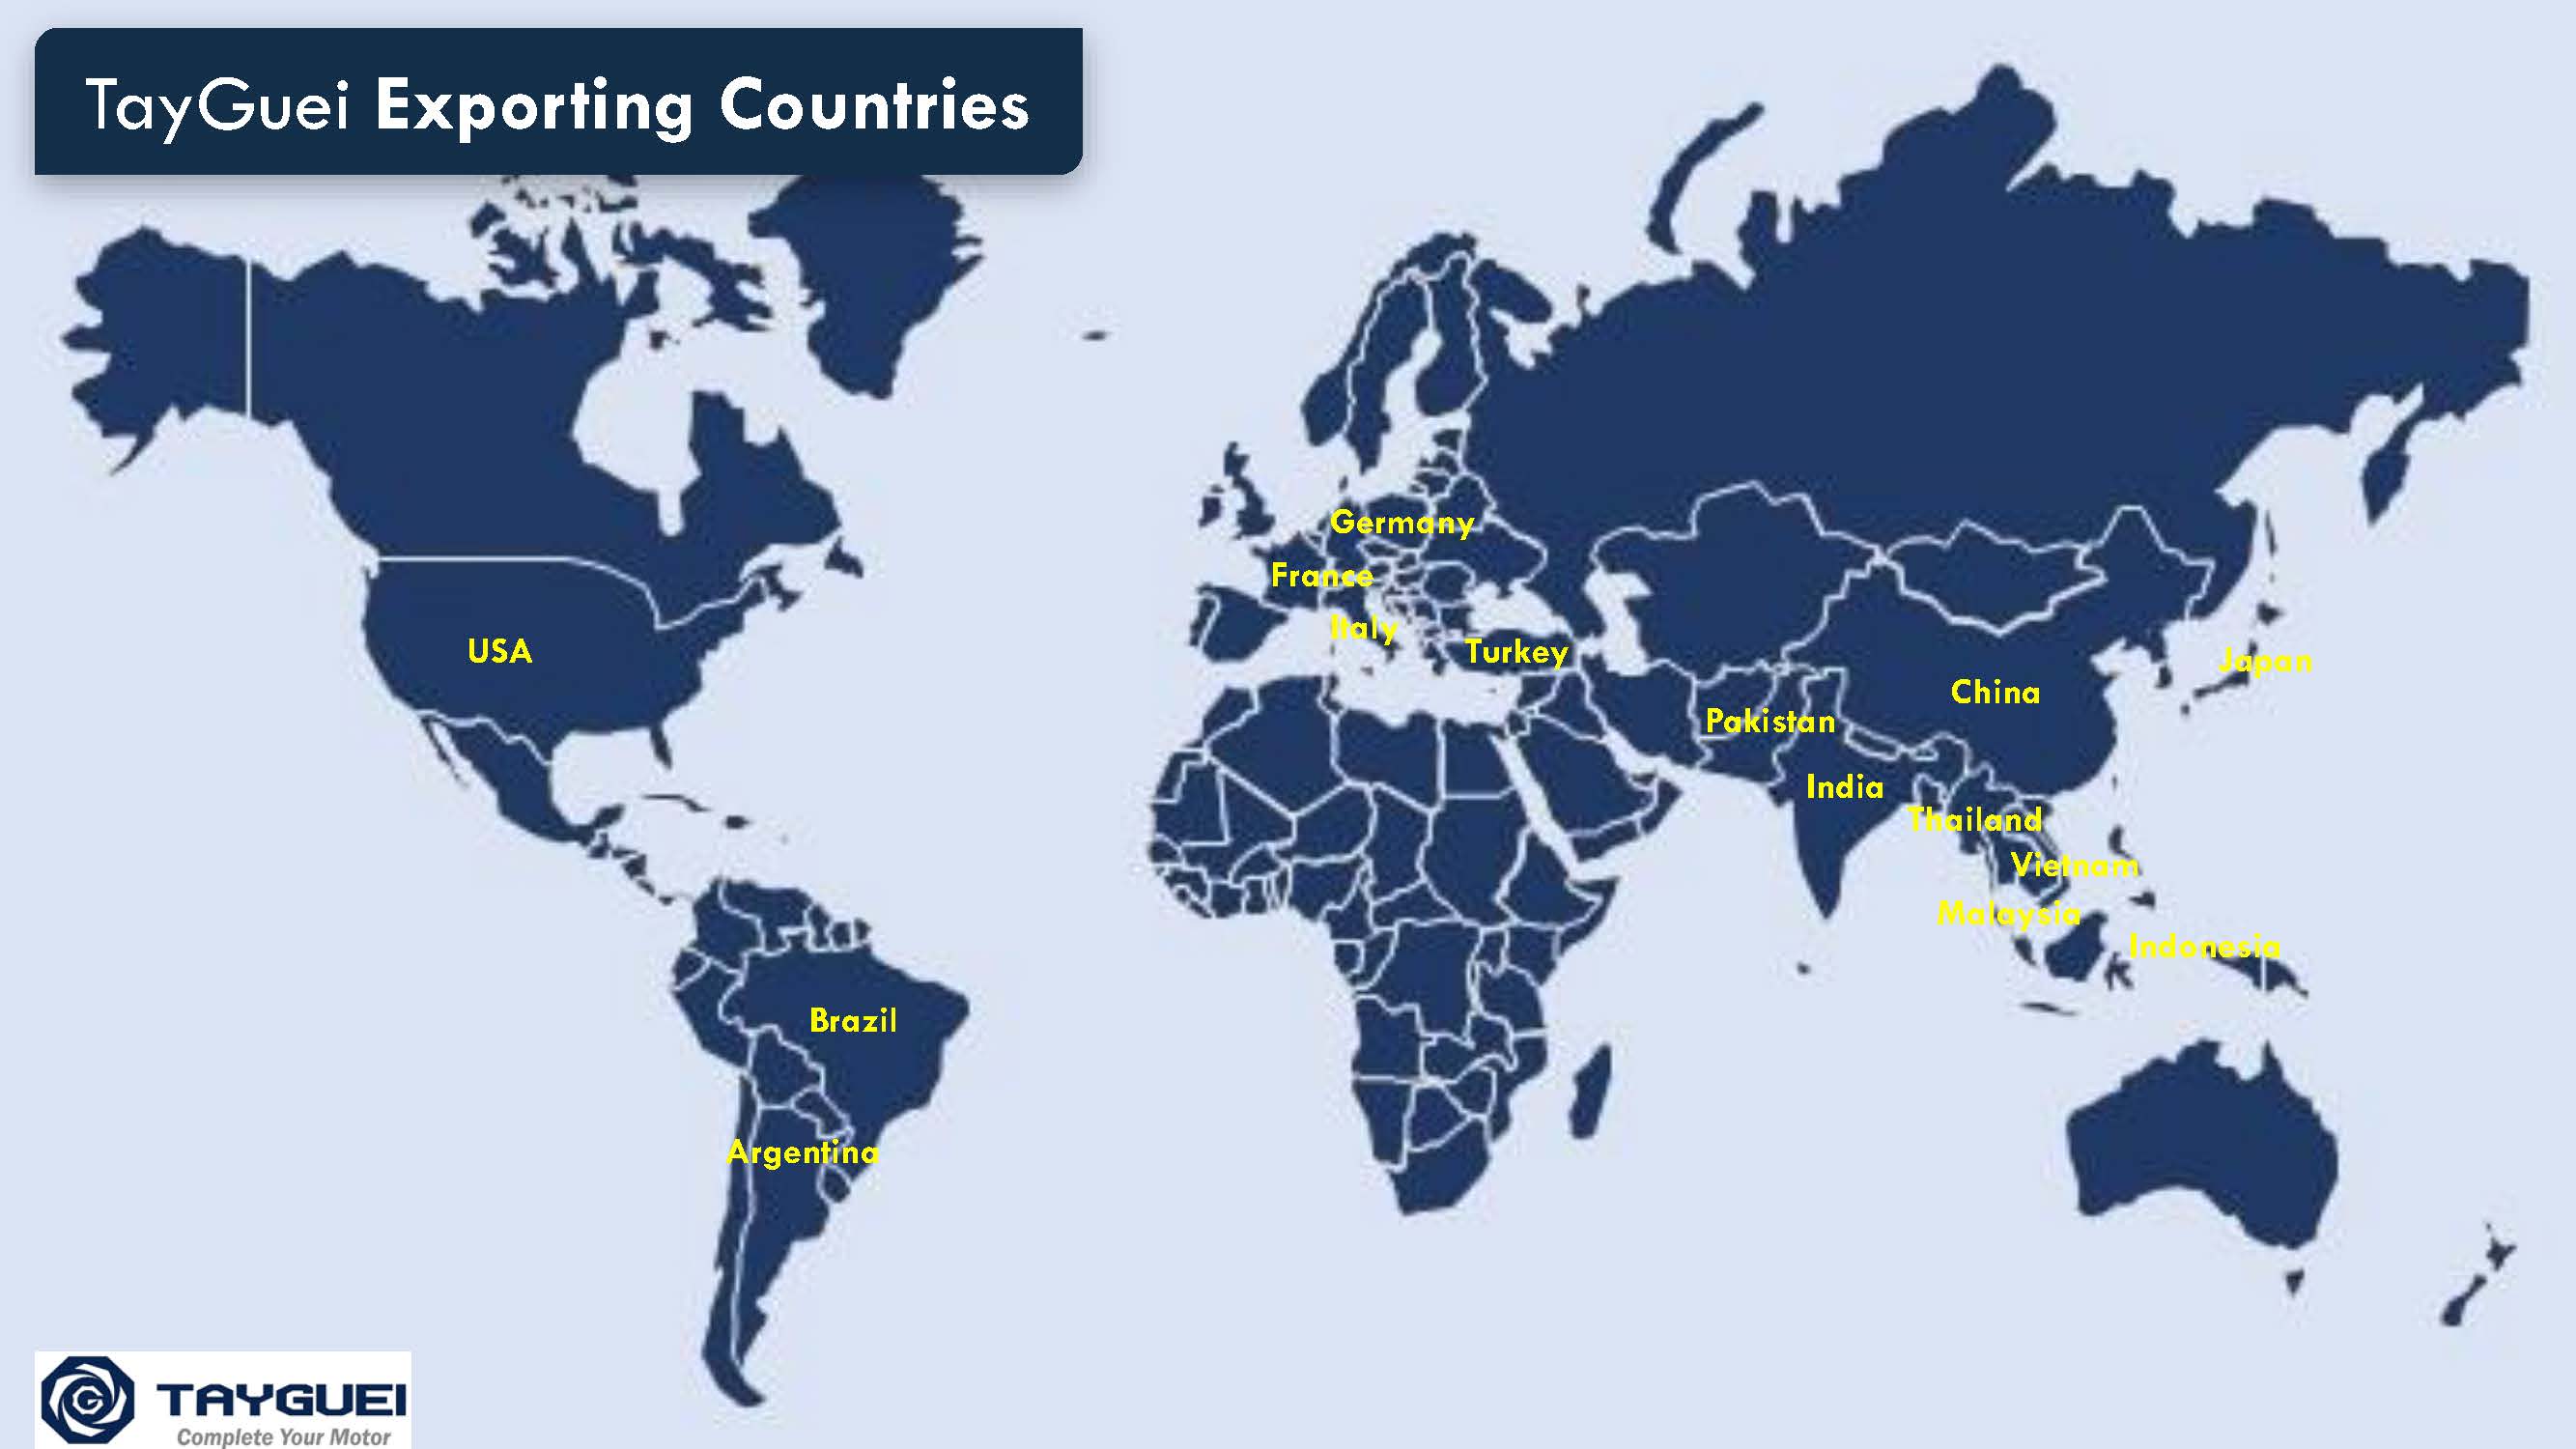 Ürünler dünya genelinde 15 ülkeye ihraç ediliyor.